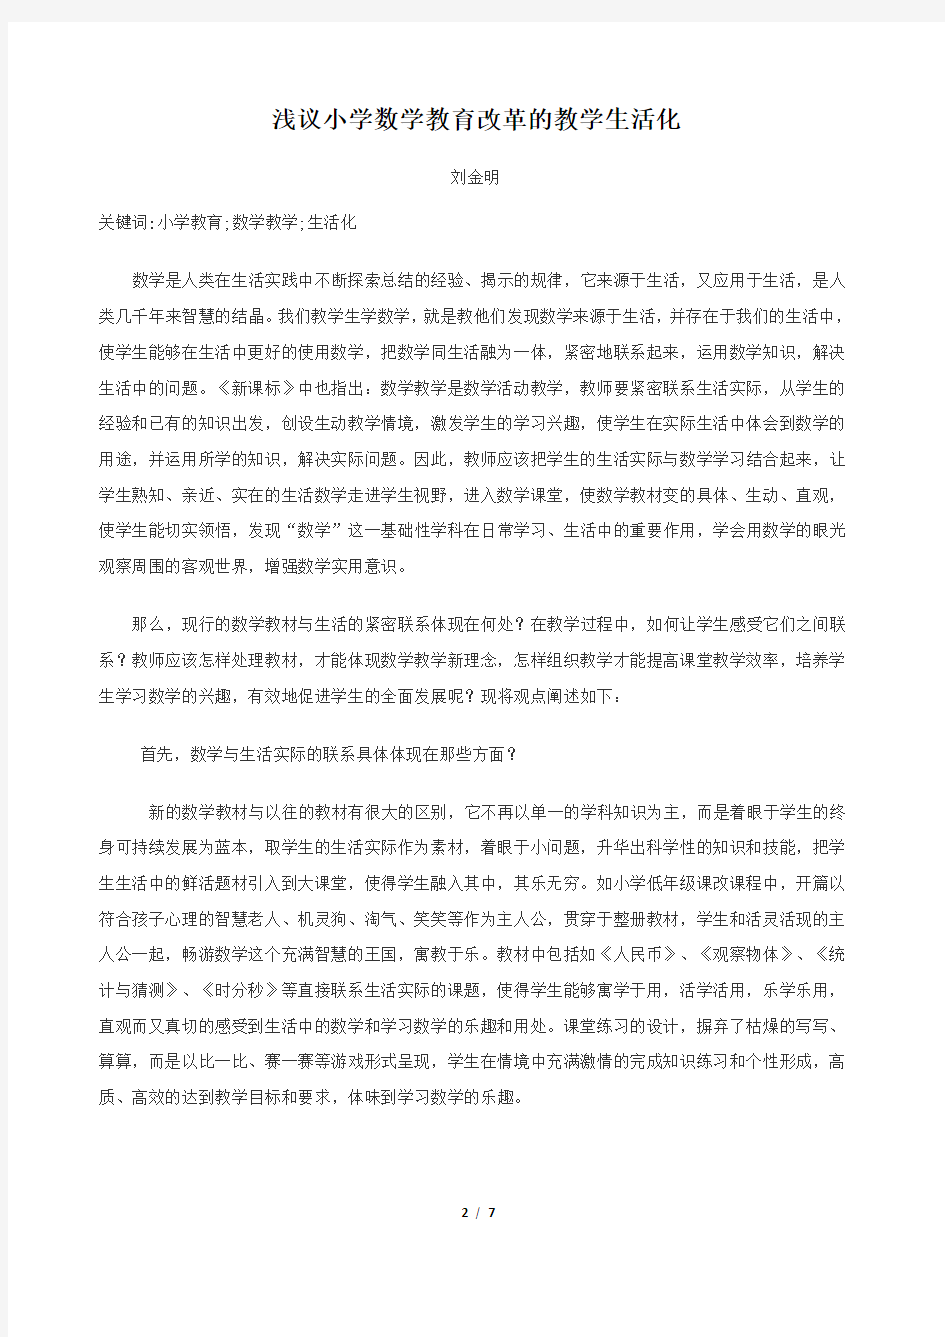 北京师范大学网络教育课程论文：《当代小学教育教学改革》